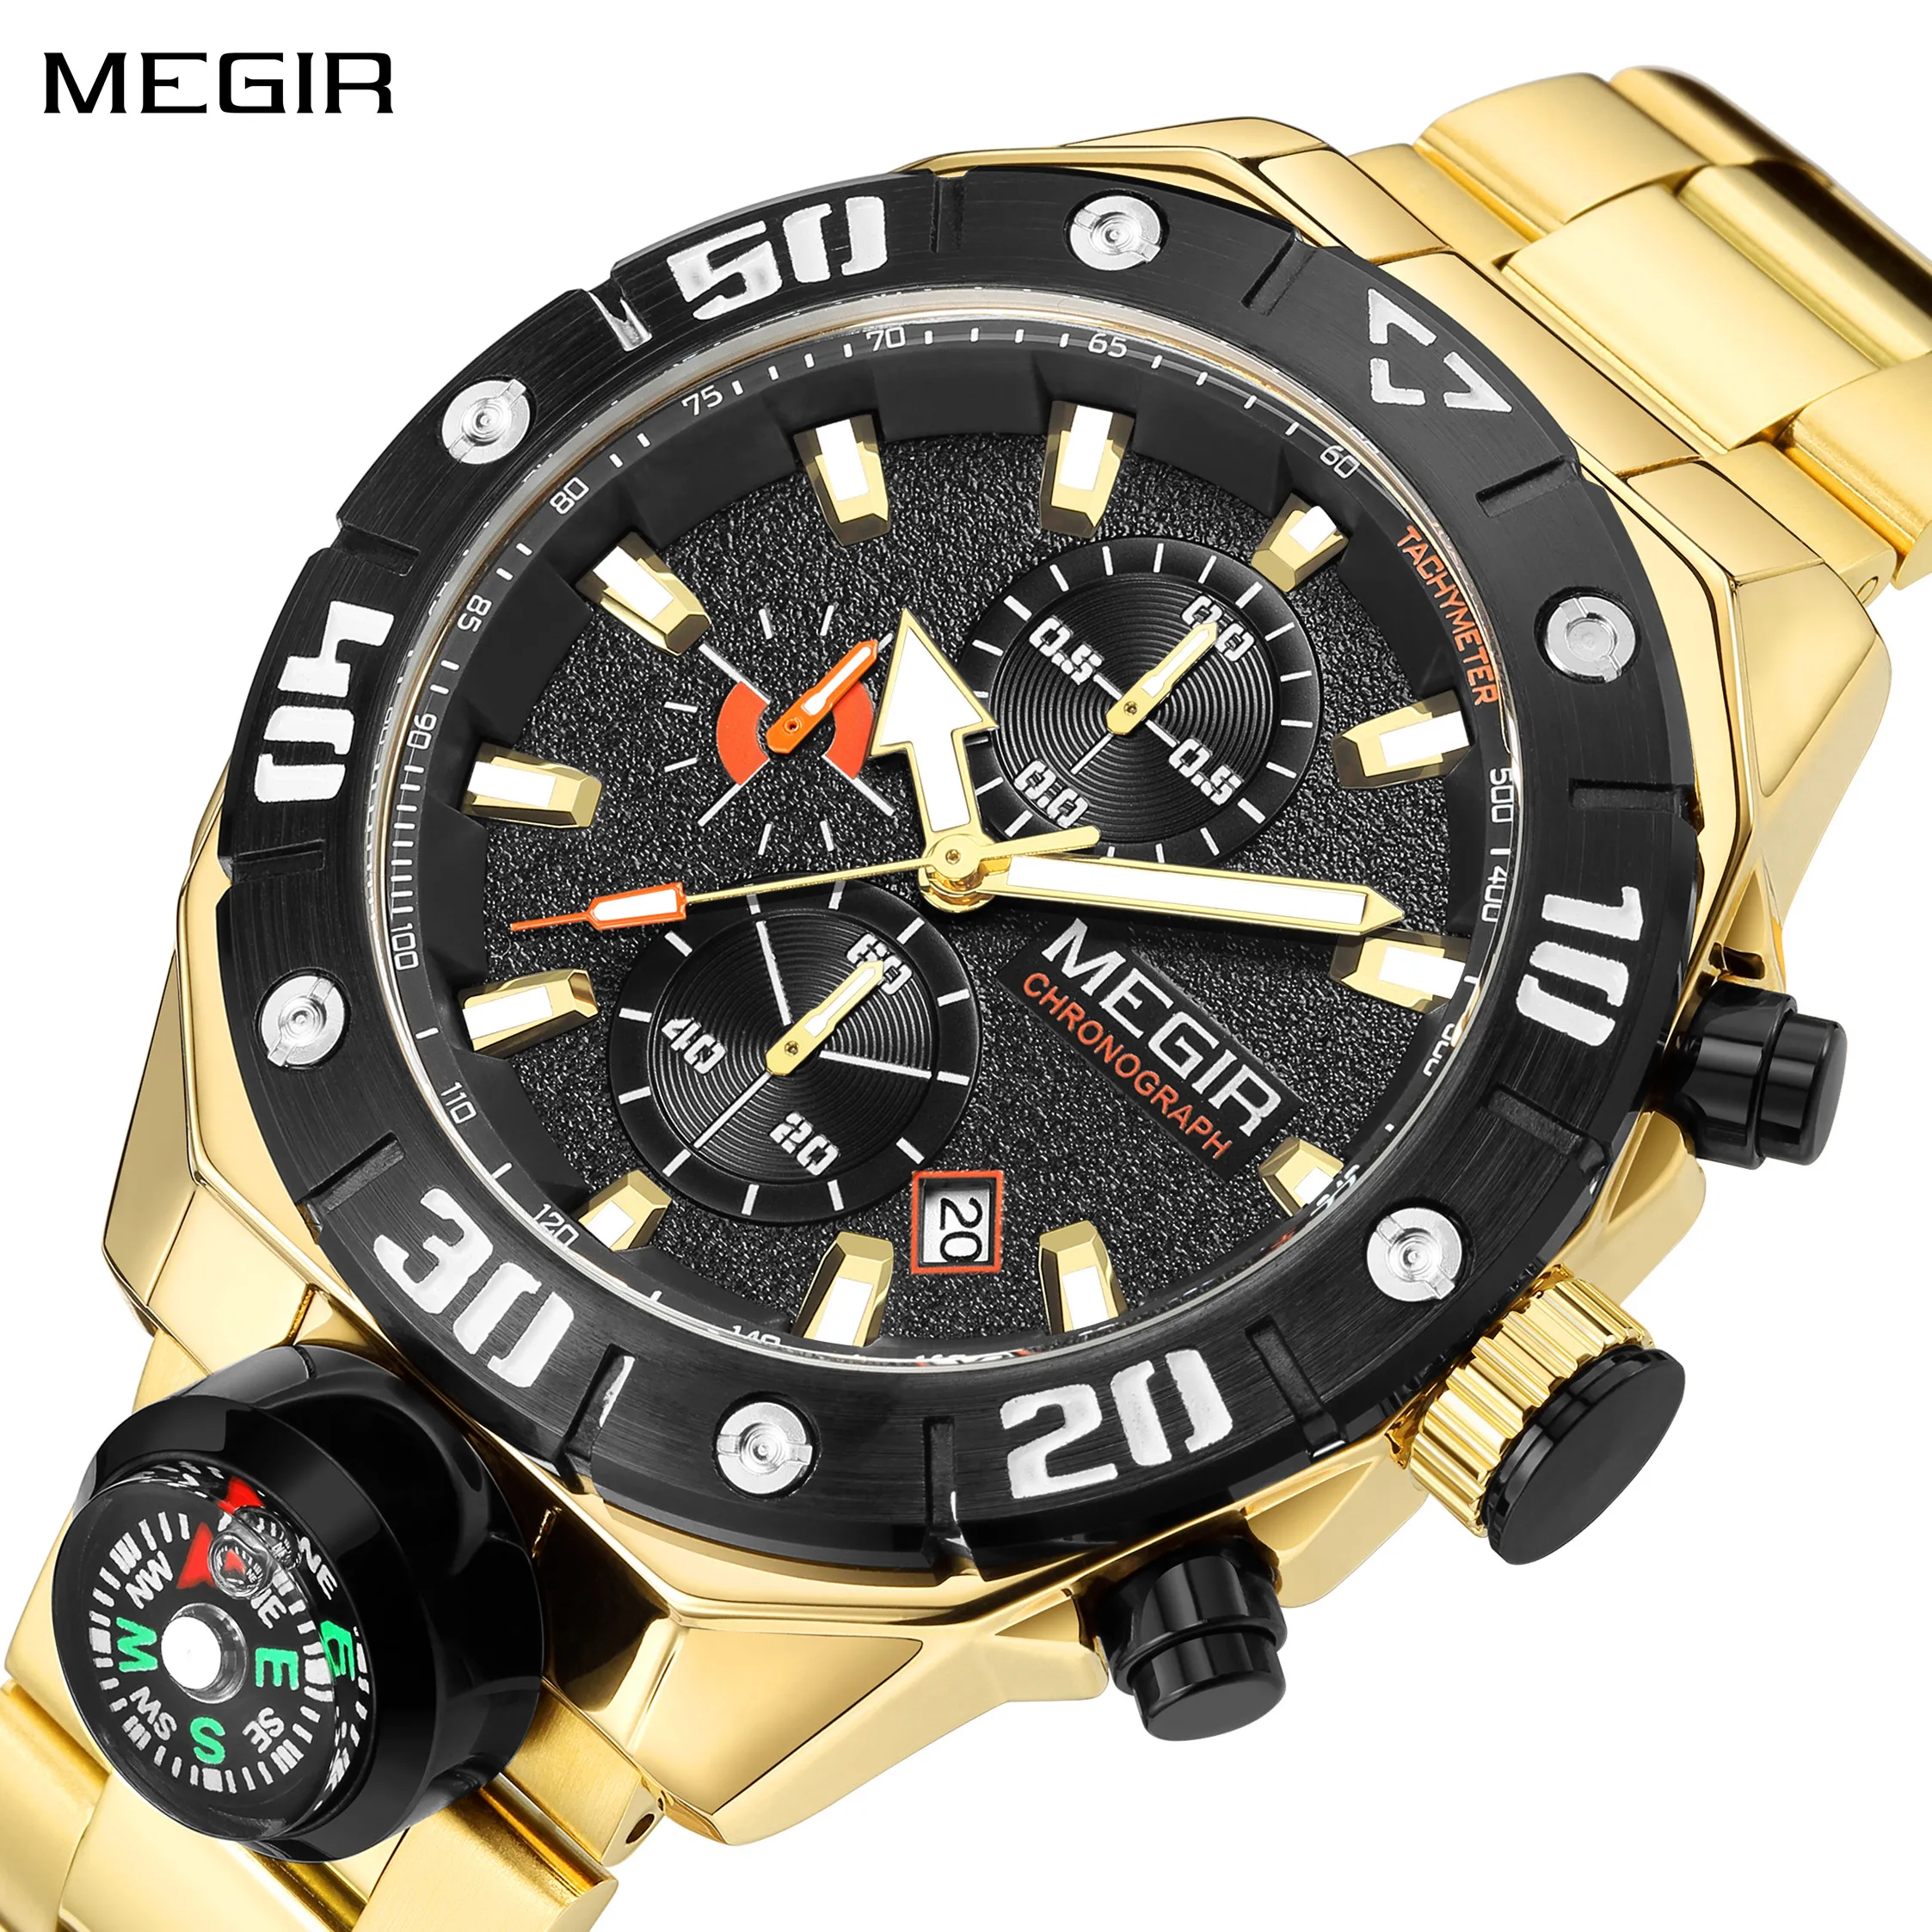 

MEGIR Watch Top Brand Luxury Business Quartz Watches Chronograph Stainless Steel Calendar Luminous Clock WristWatch Montre Homme